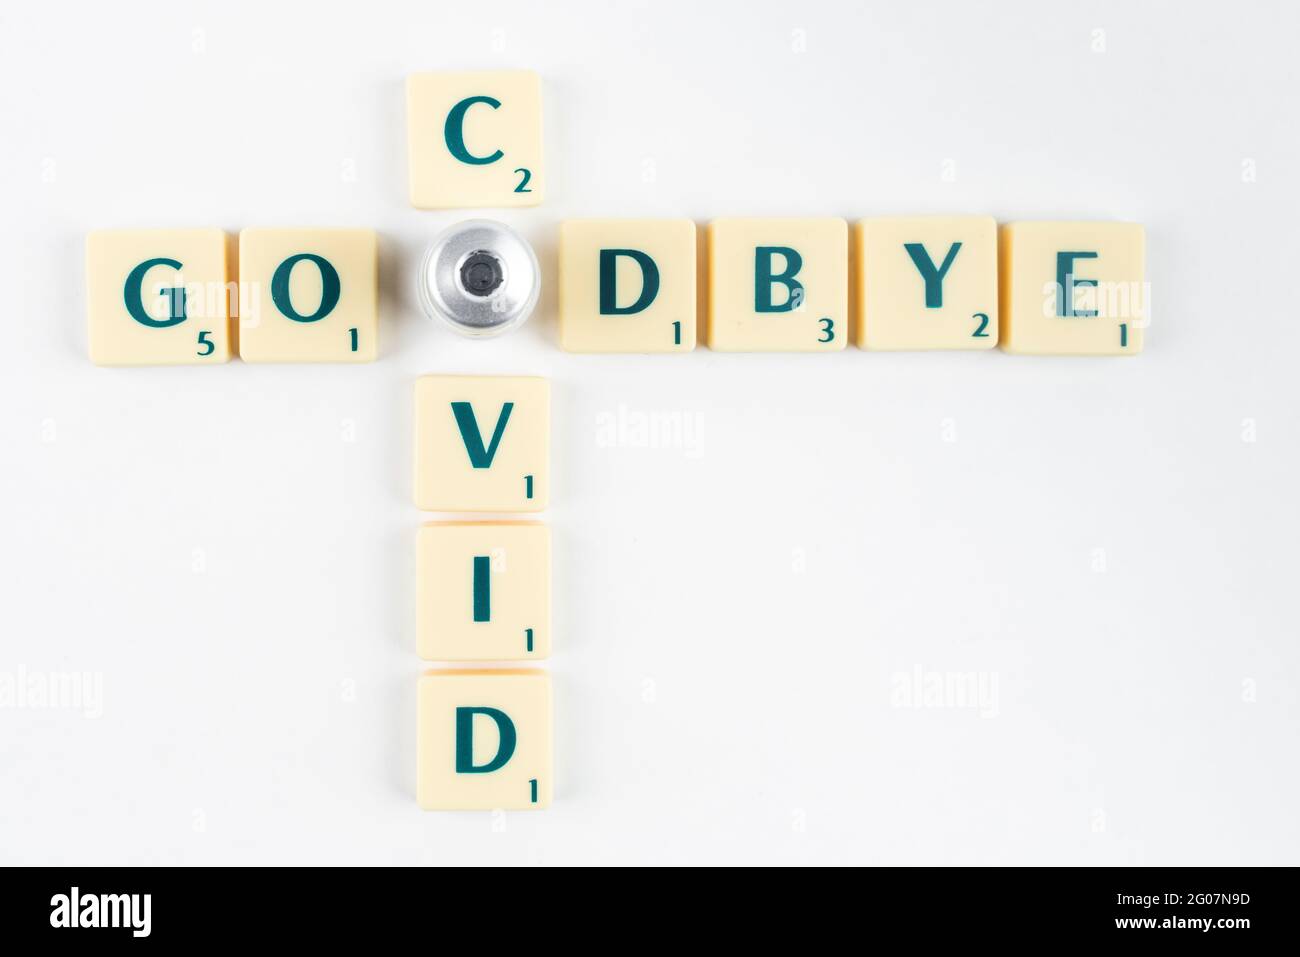 Gelbe Scrabble-Buchstaben, die Auf Wiedersehen COVID mit dem O-Buchstaben, der durch eine Impfampulle ersetzt wird, besagen. Beendigung der Pandemie. Impfprogramm. Covid-19-Auflösung Stockfoto